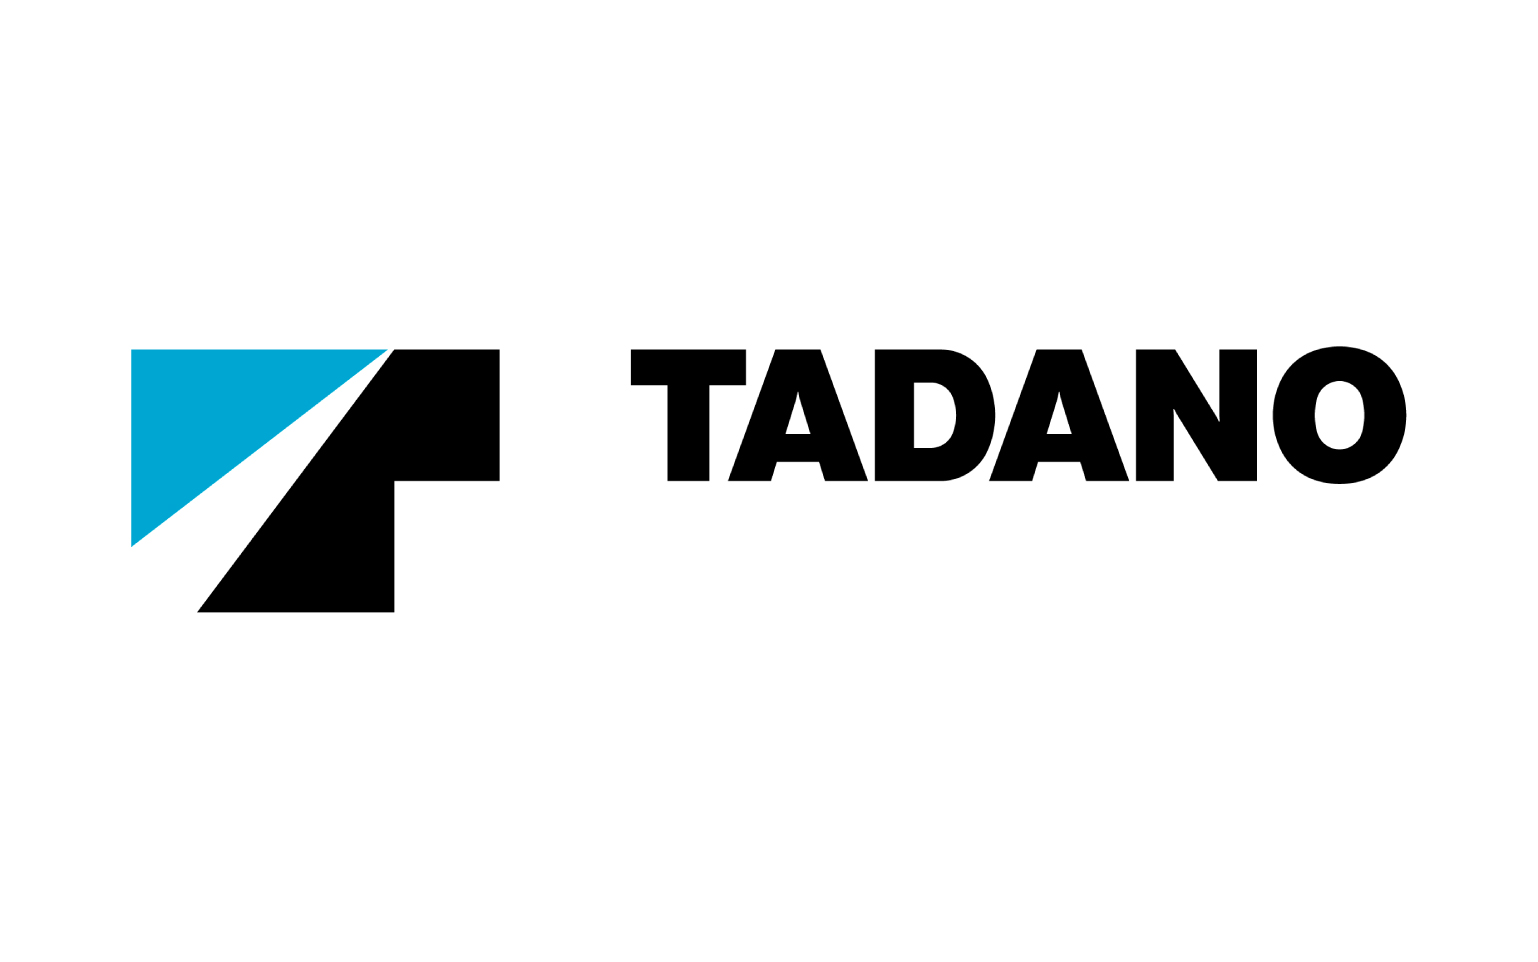 建設用クレーンのトップ企業 タダノが
「LaKeel Online Media Service」を採用